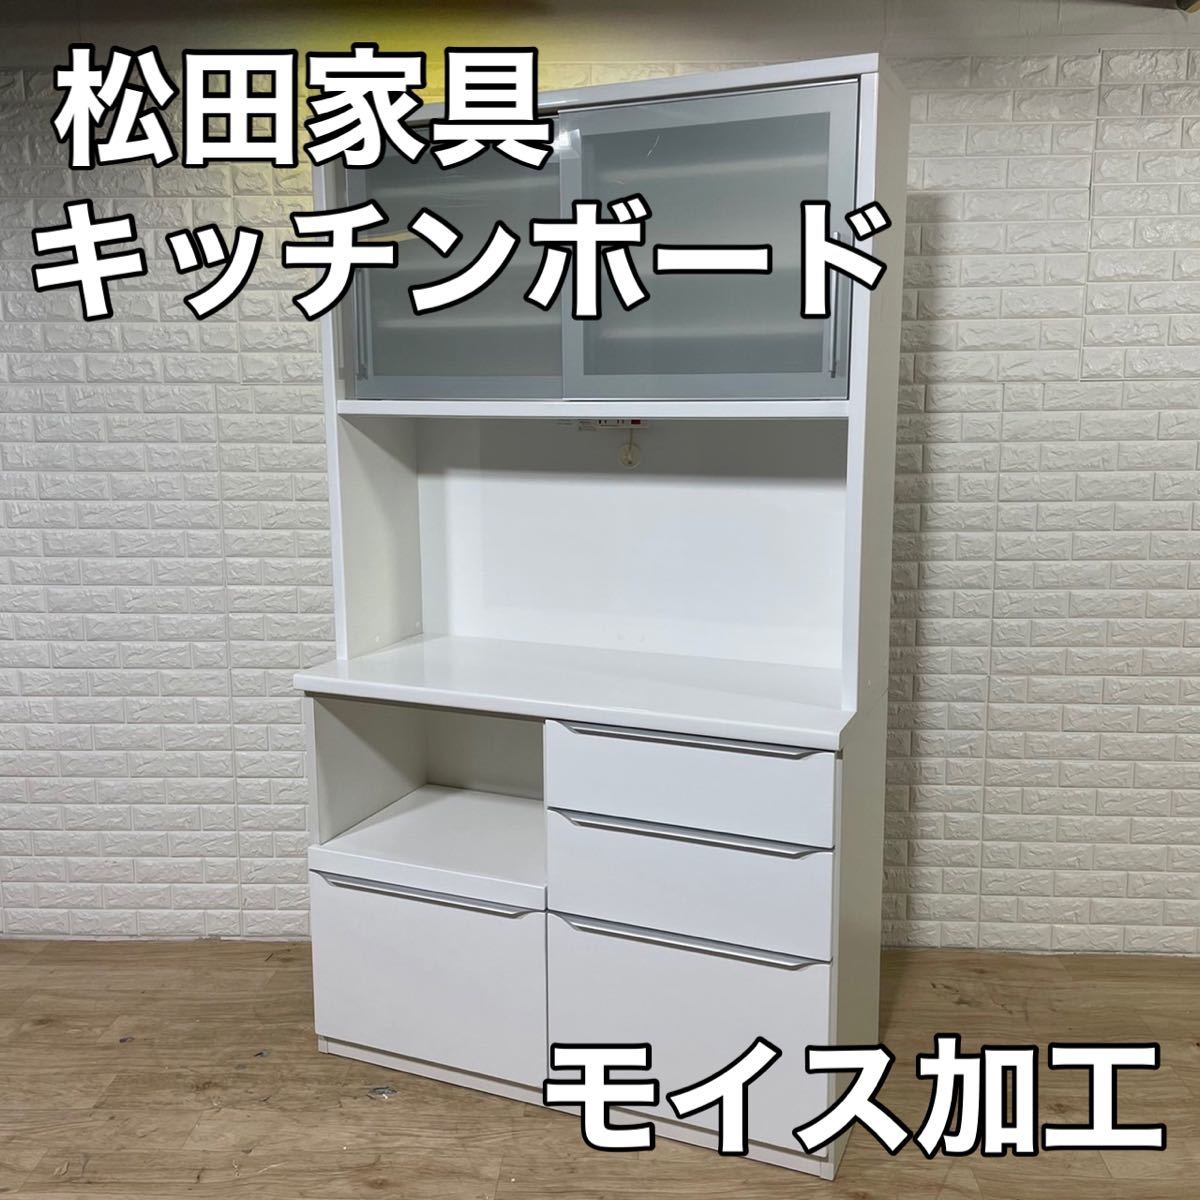 ホワイト系【初回限定お試し価格】 松田家具 食器棚 キッチンボード 